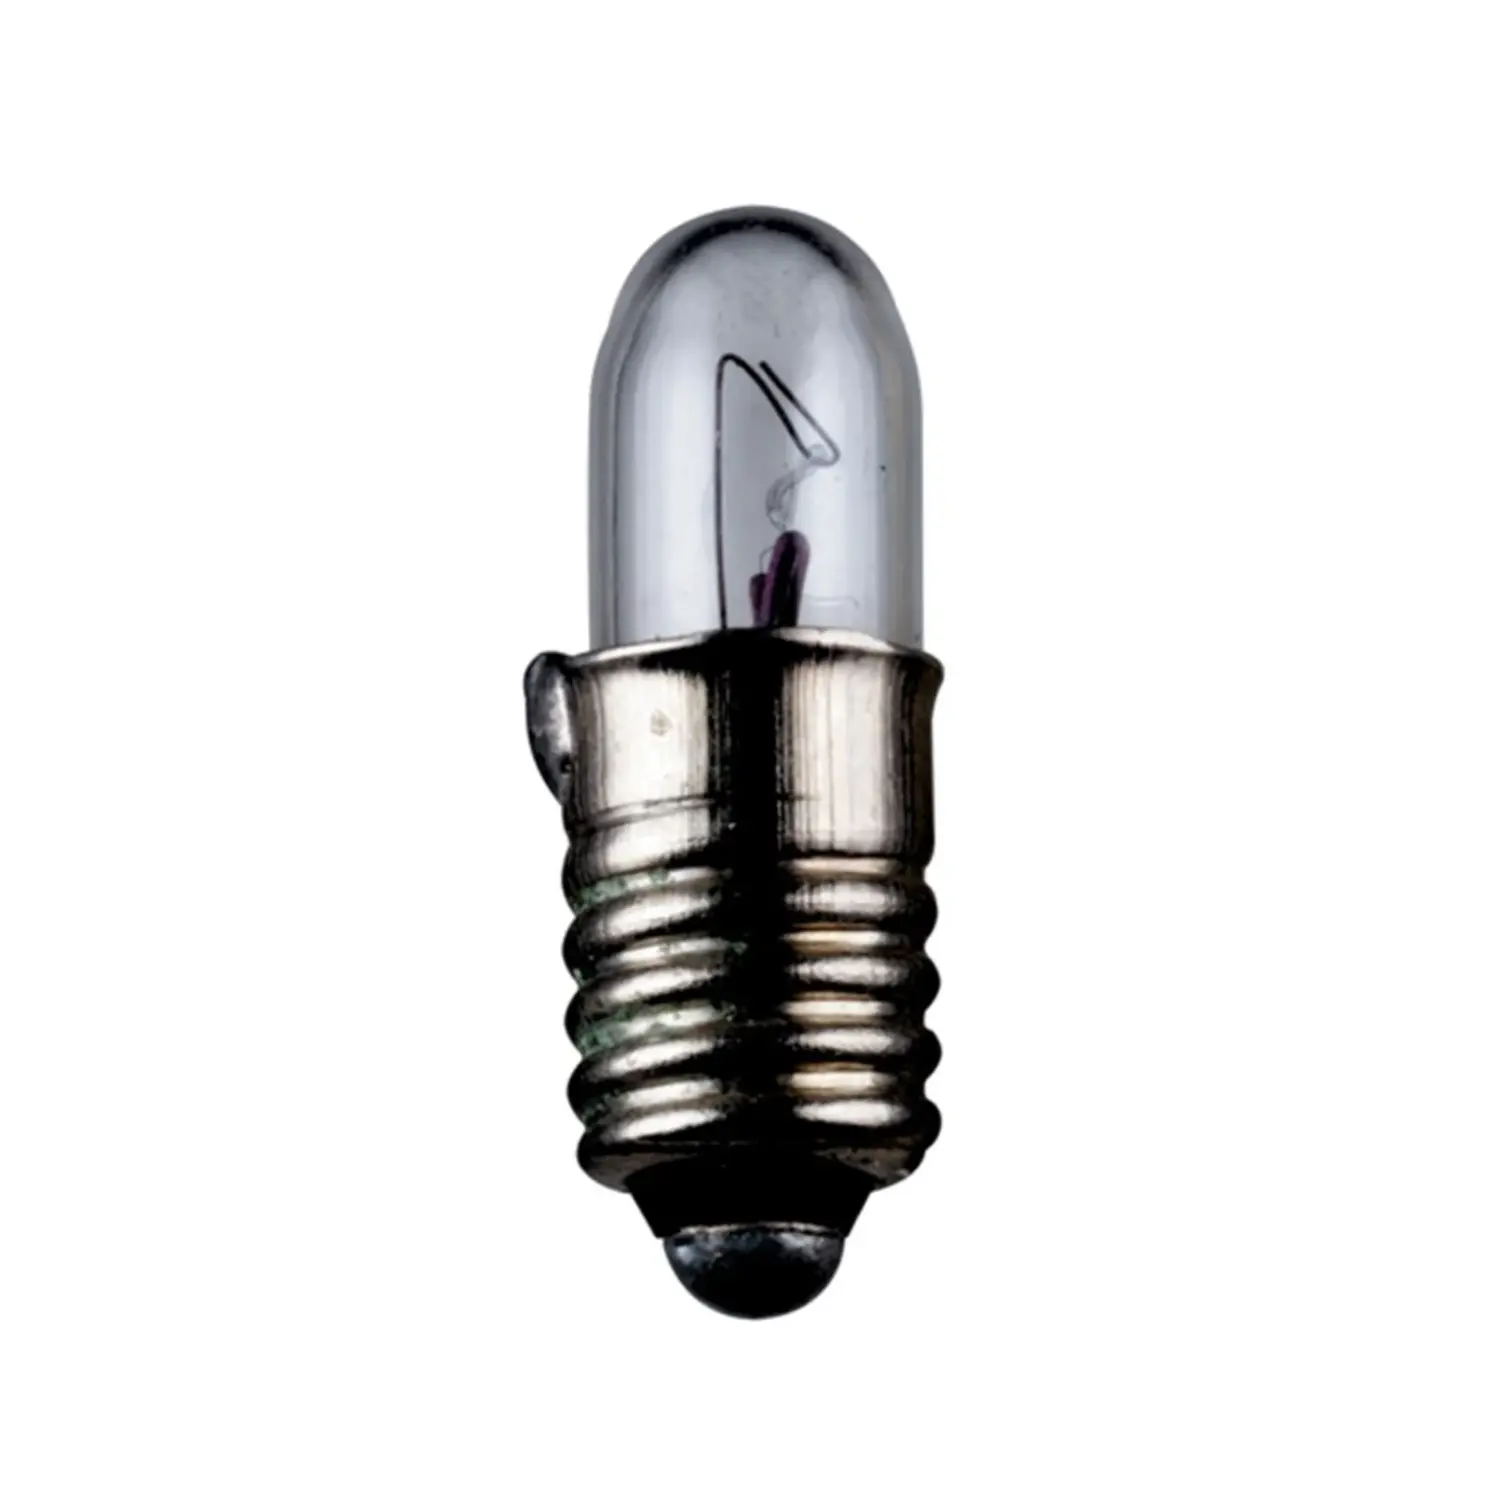 immagine del prodotto lampadina in miniatura modellismo treno luci natale presepio e5.5 1 watt 12 volt